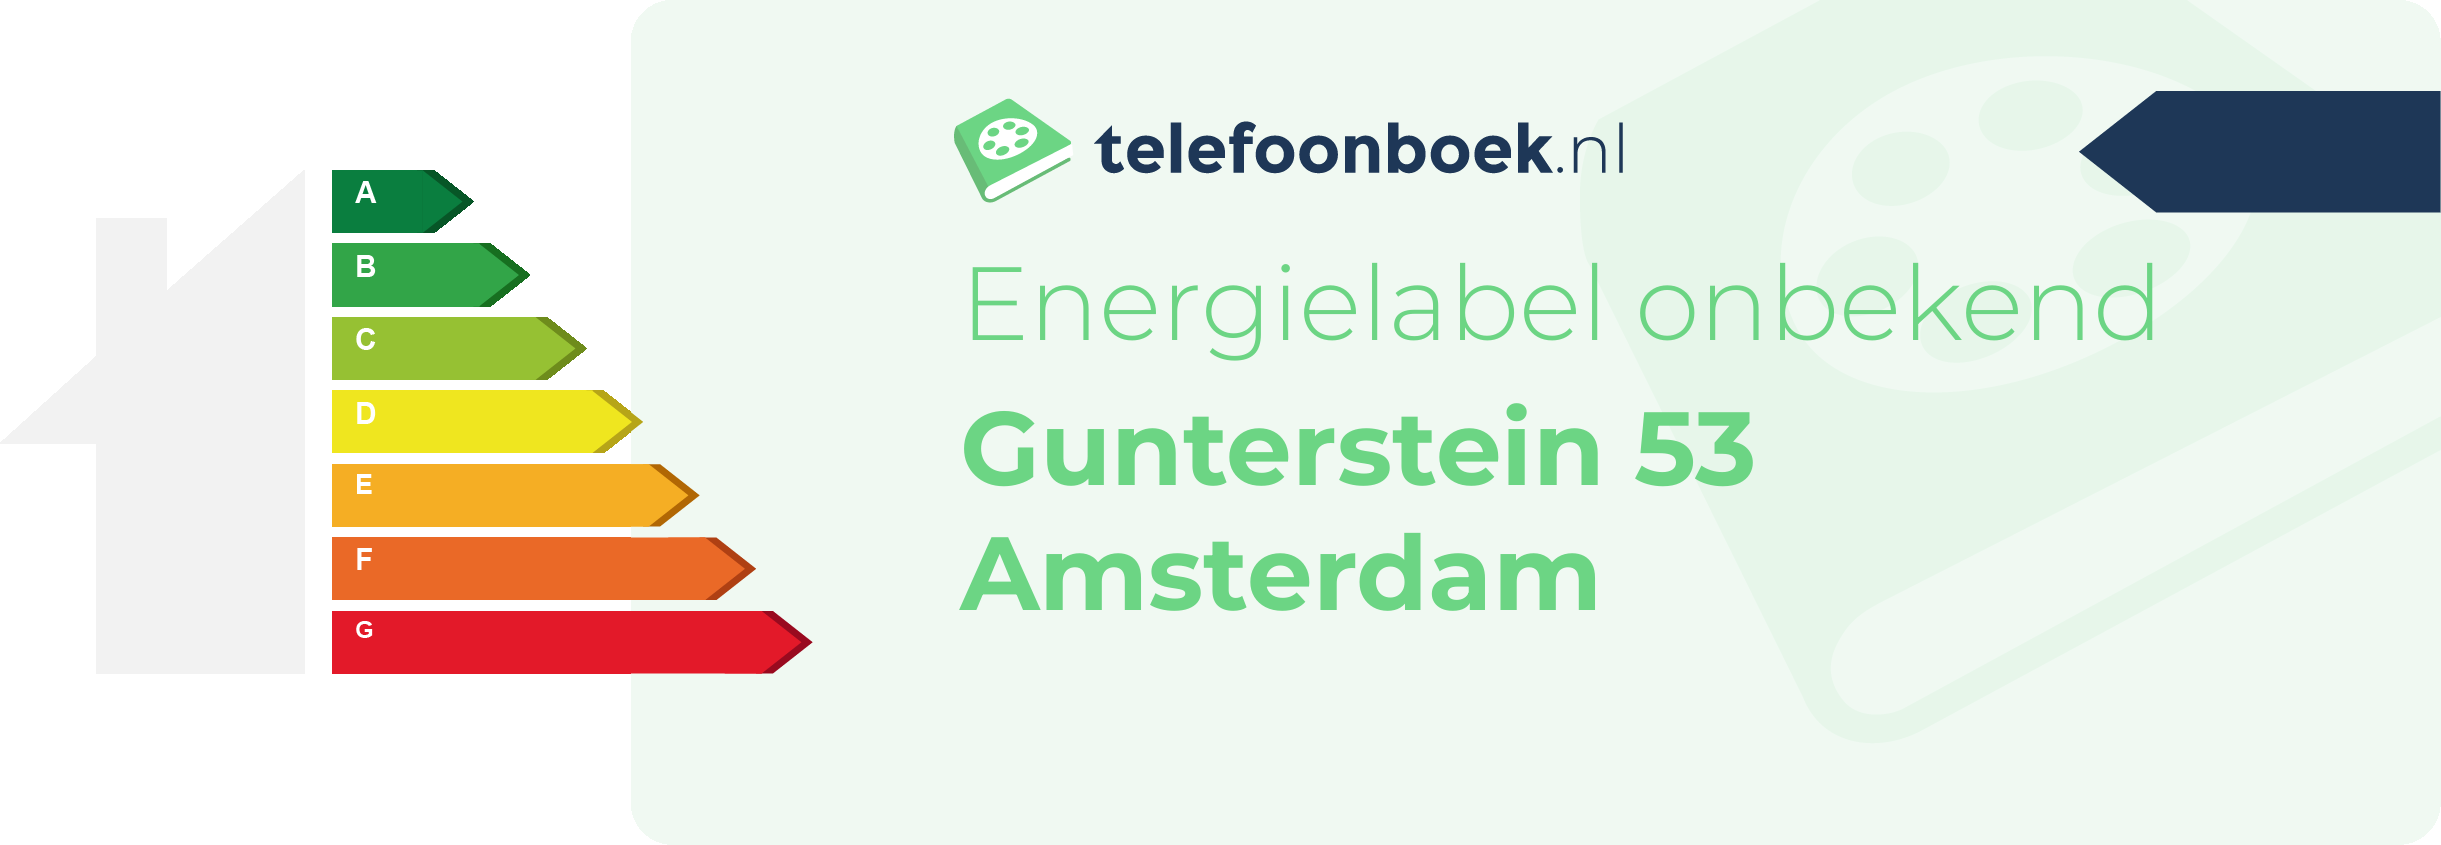 Energielabel Gunterstein 53 Amsterdam